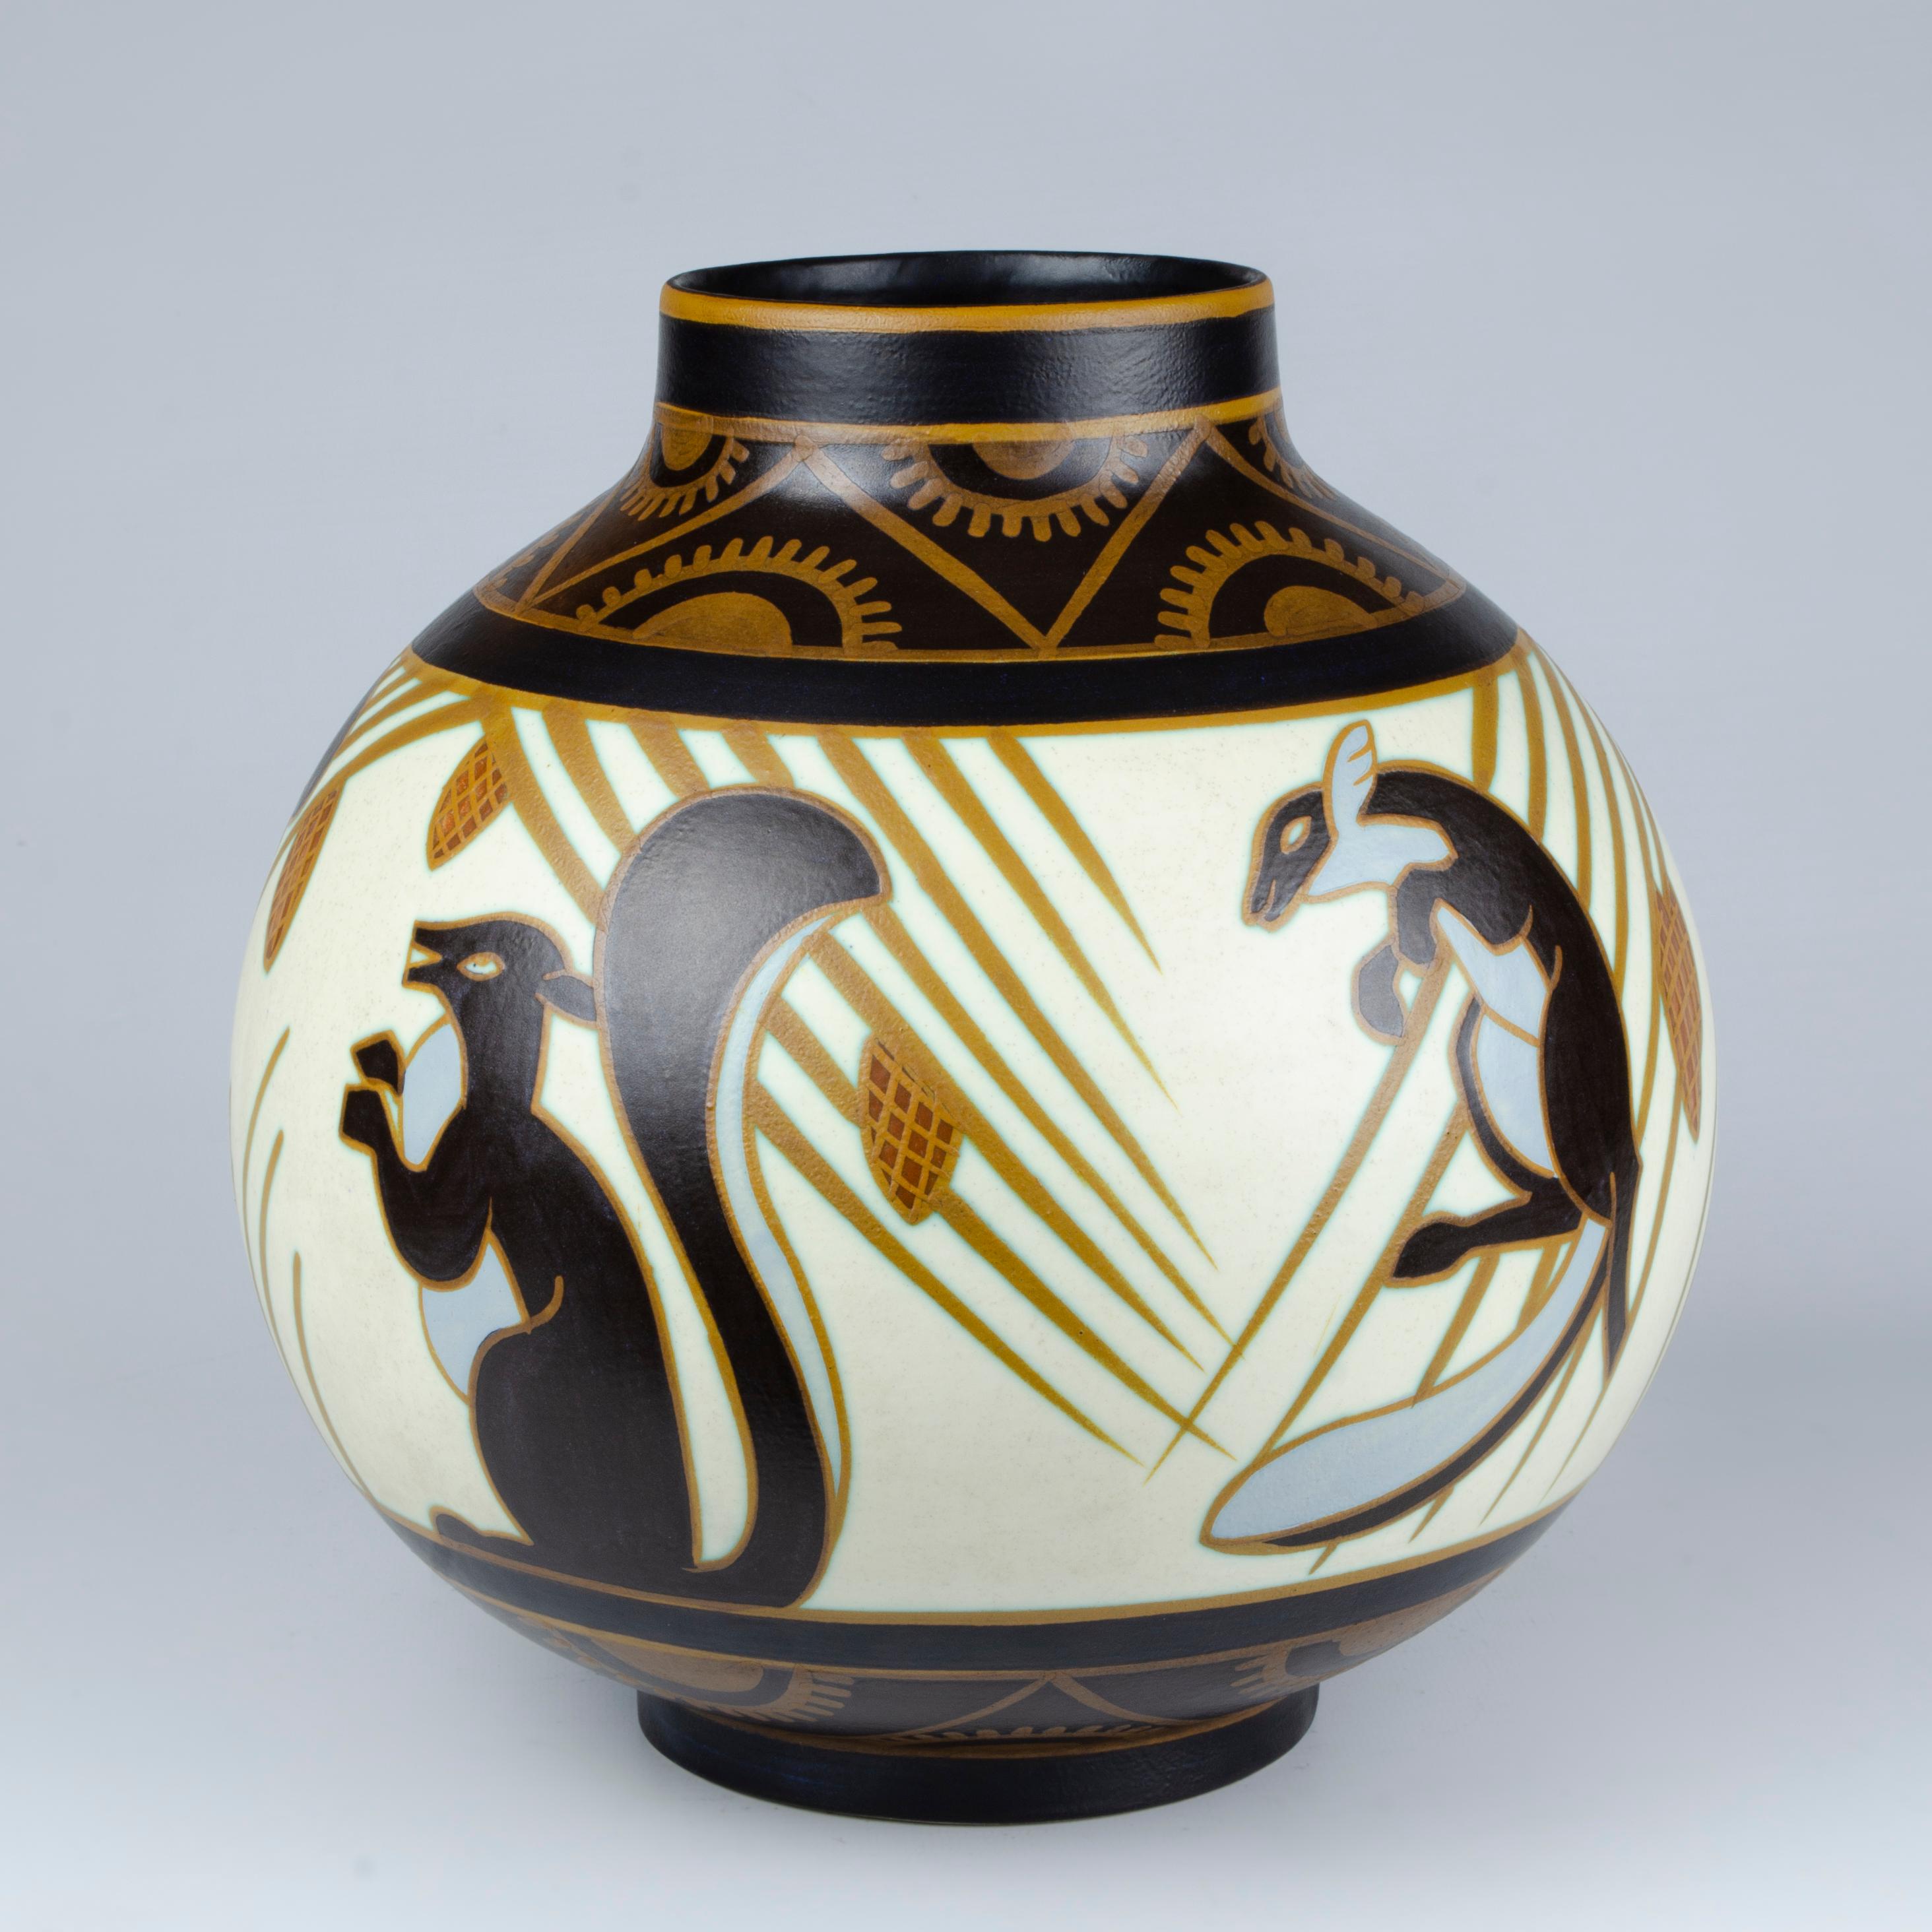 Vase en céramique avec un motif d'écureuil. Modèle 1349, fabriqué par Charles Catteau (1880-1966). Signé CH. Catteau, D.1349. Dochercres - Keramis - Made in Belgium.

Belgique, CIRCA 1920.

Bibliographie : 